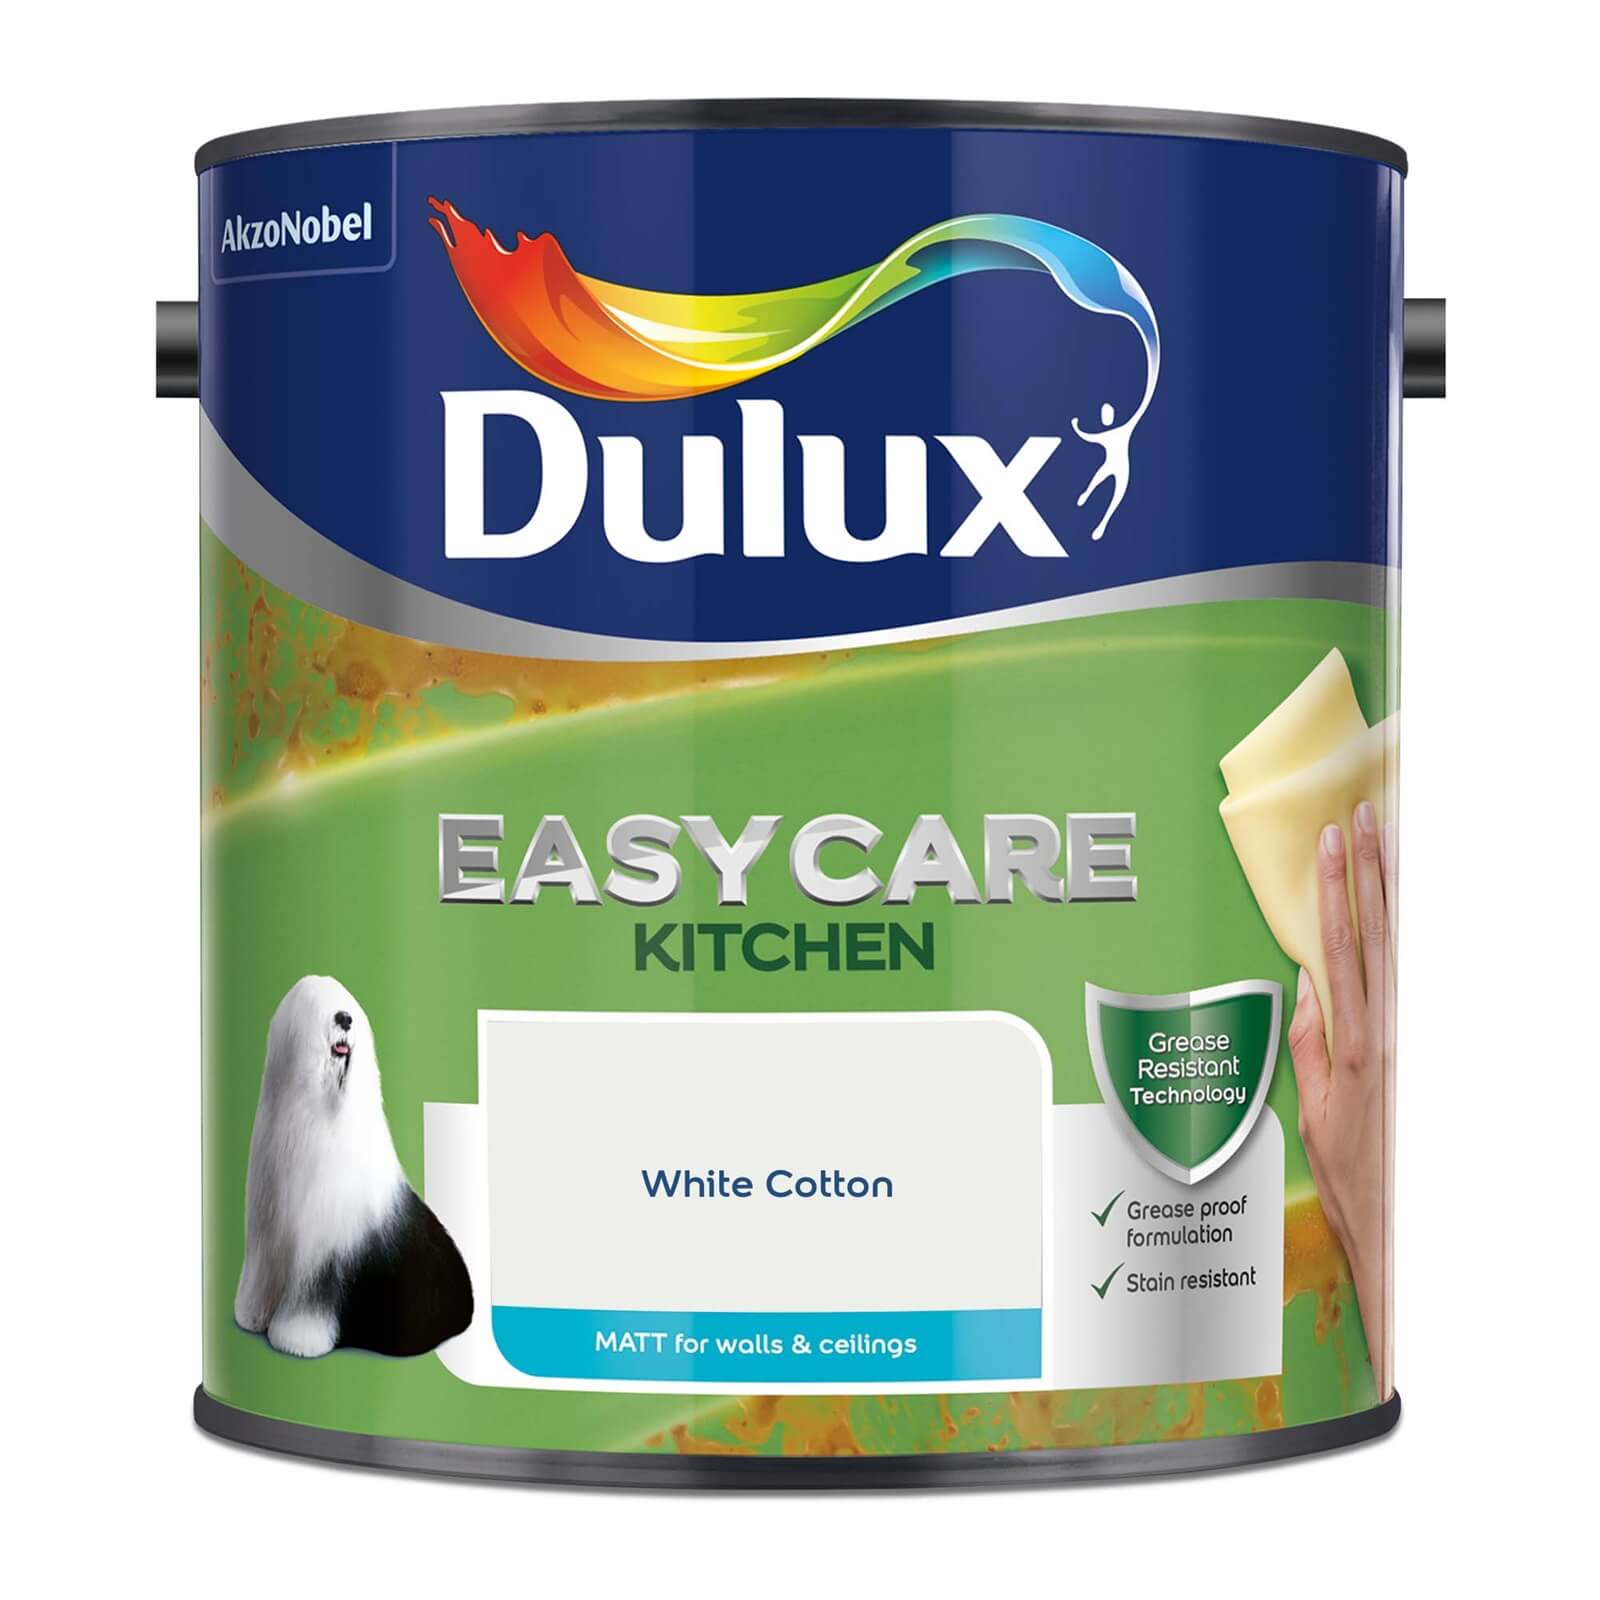 Dulux Easycare Kitchen White Cotton Matt Paint - 2.5L